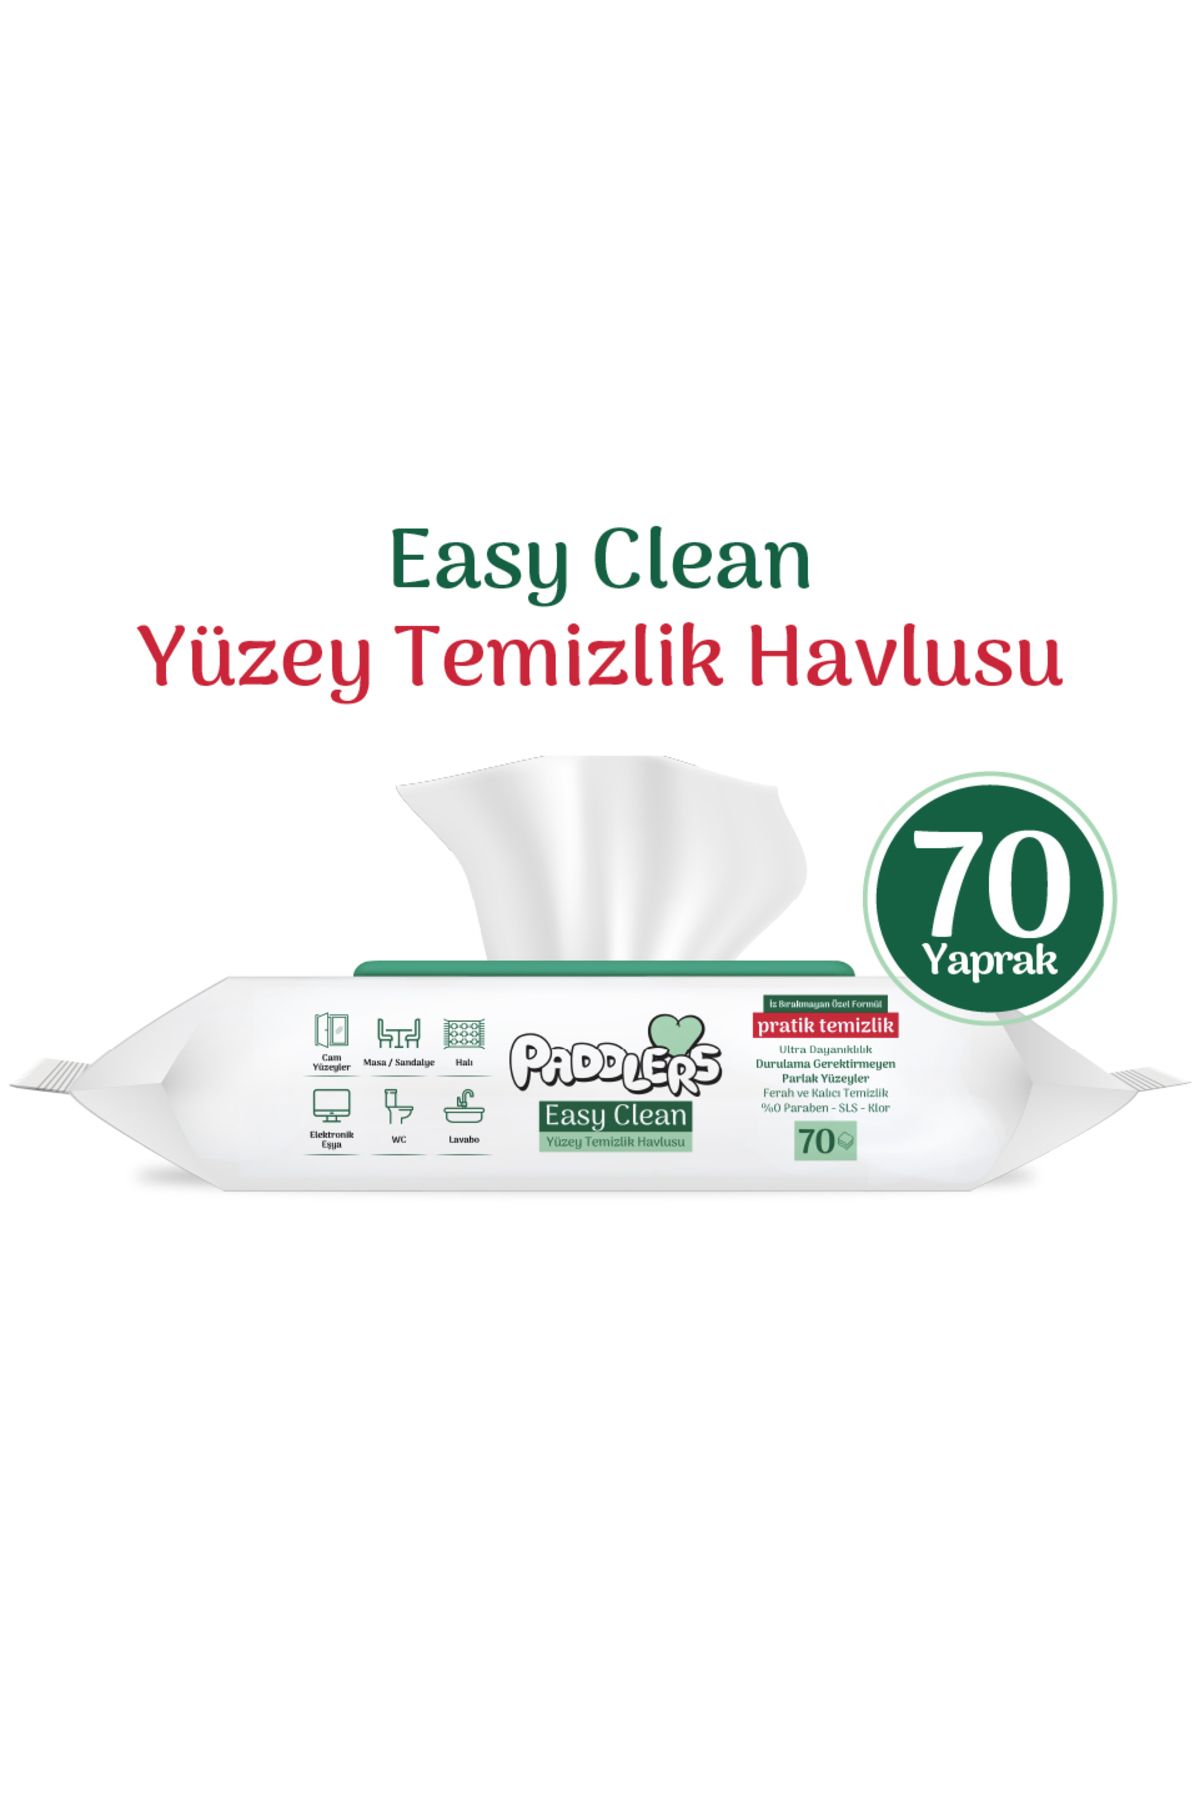 Paddlers Easy Clean Beyaz Sabun Katkılı Yüzey temizlik Havlusu 70 Yaprak